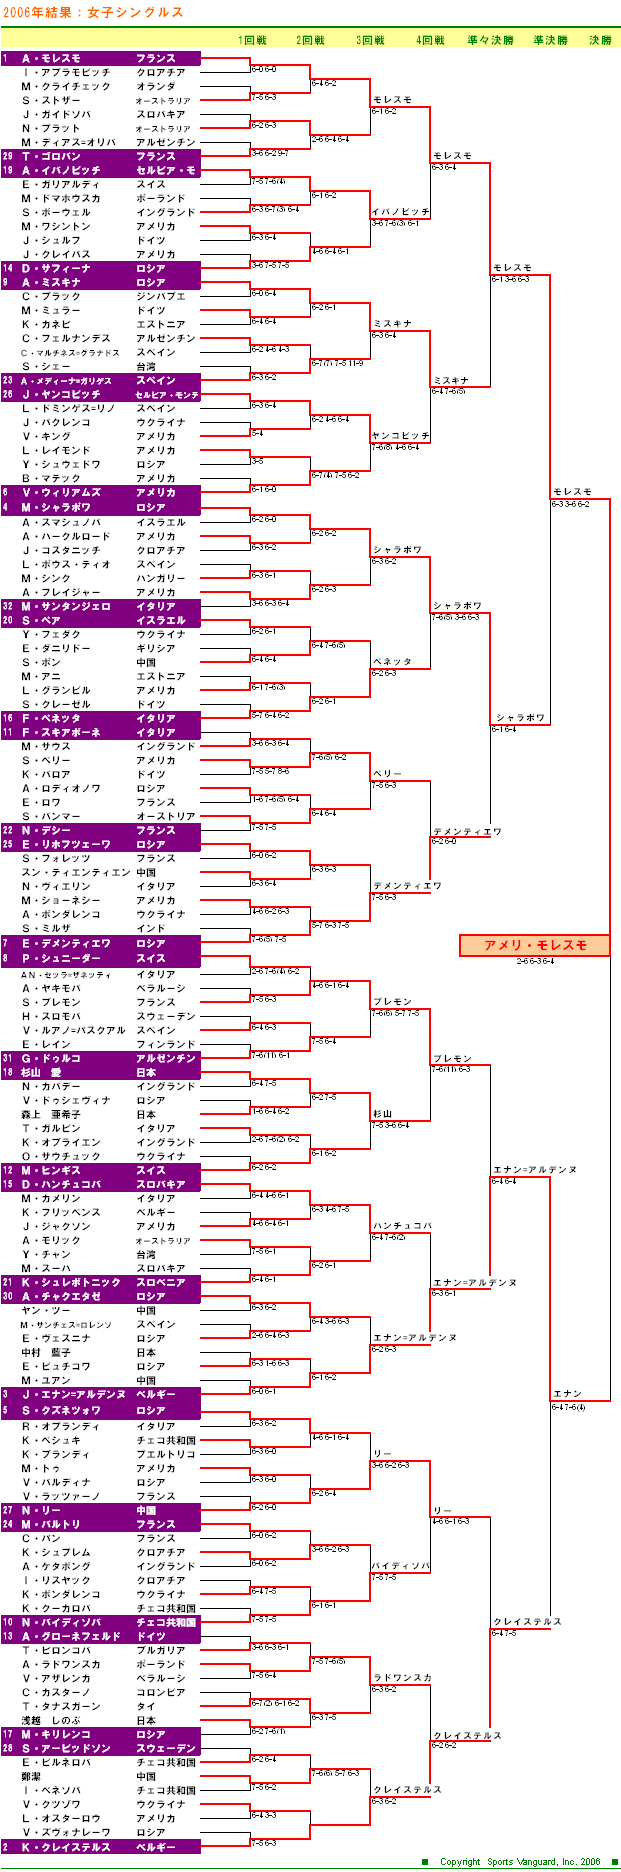 ウィンブルドンテニス2006　女子シングルスドロー表